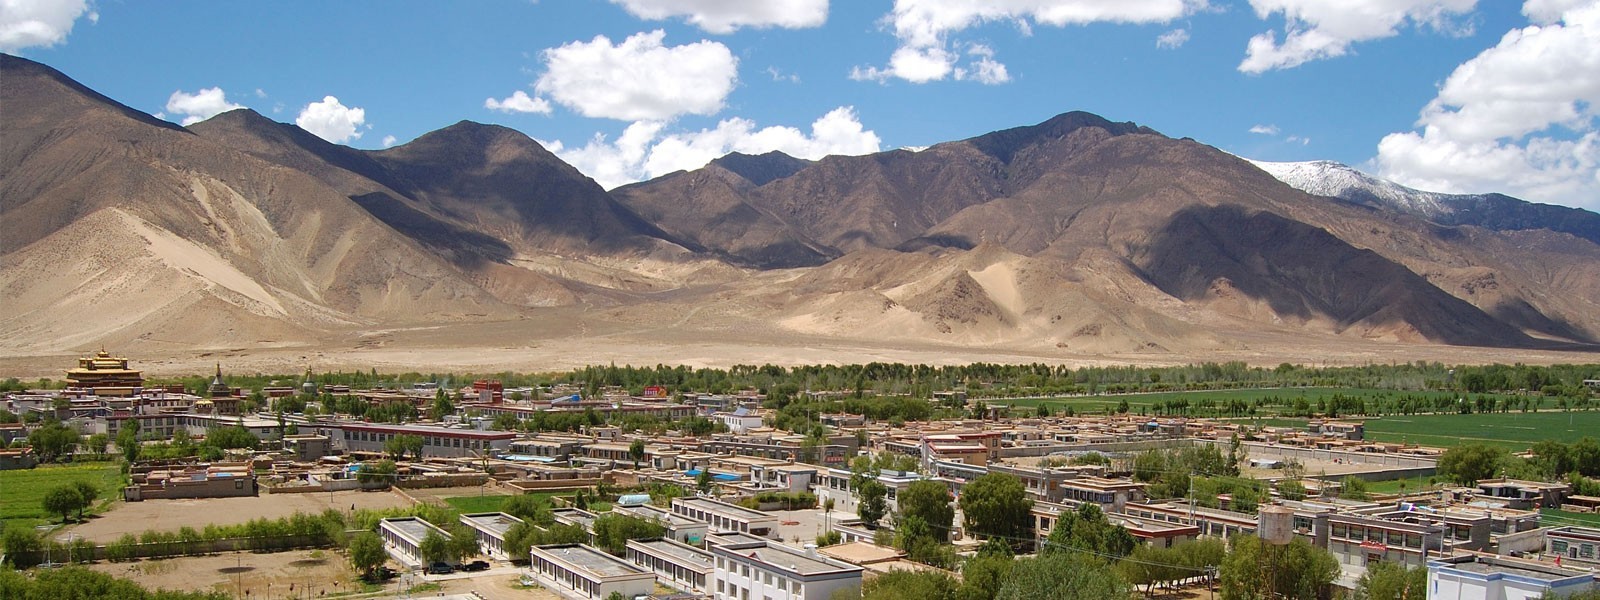 Lhasa City Tours - 9 Days